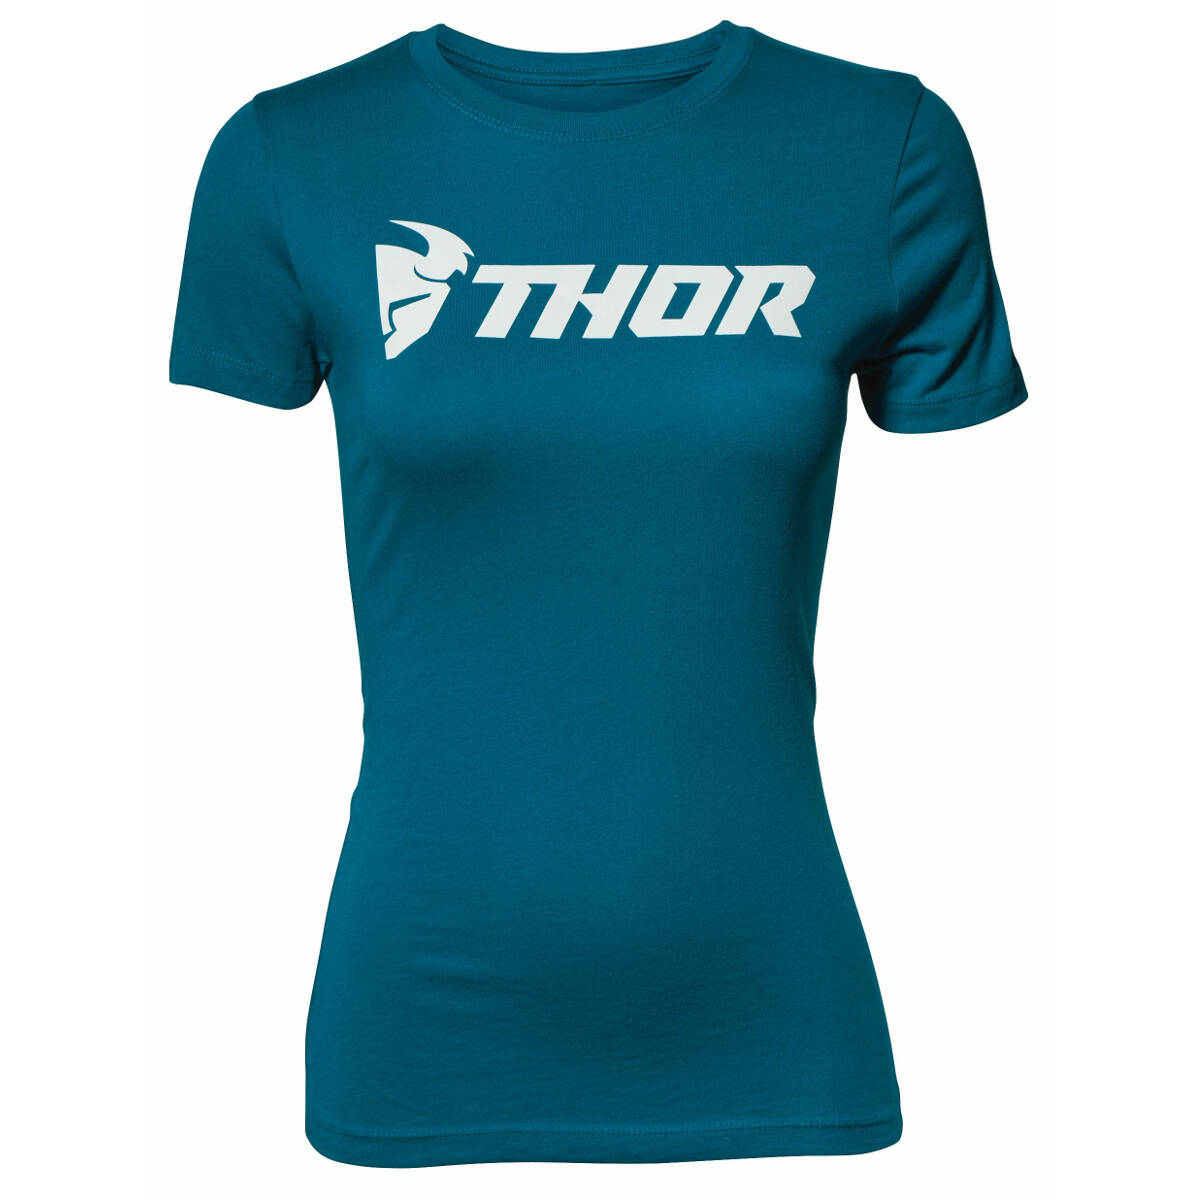 Thor Girls T-Shirt Loud Teal